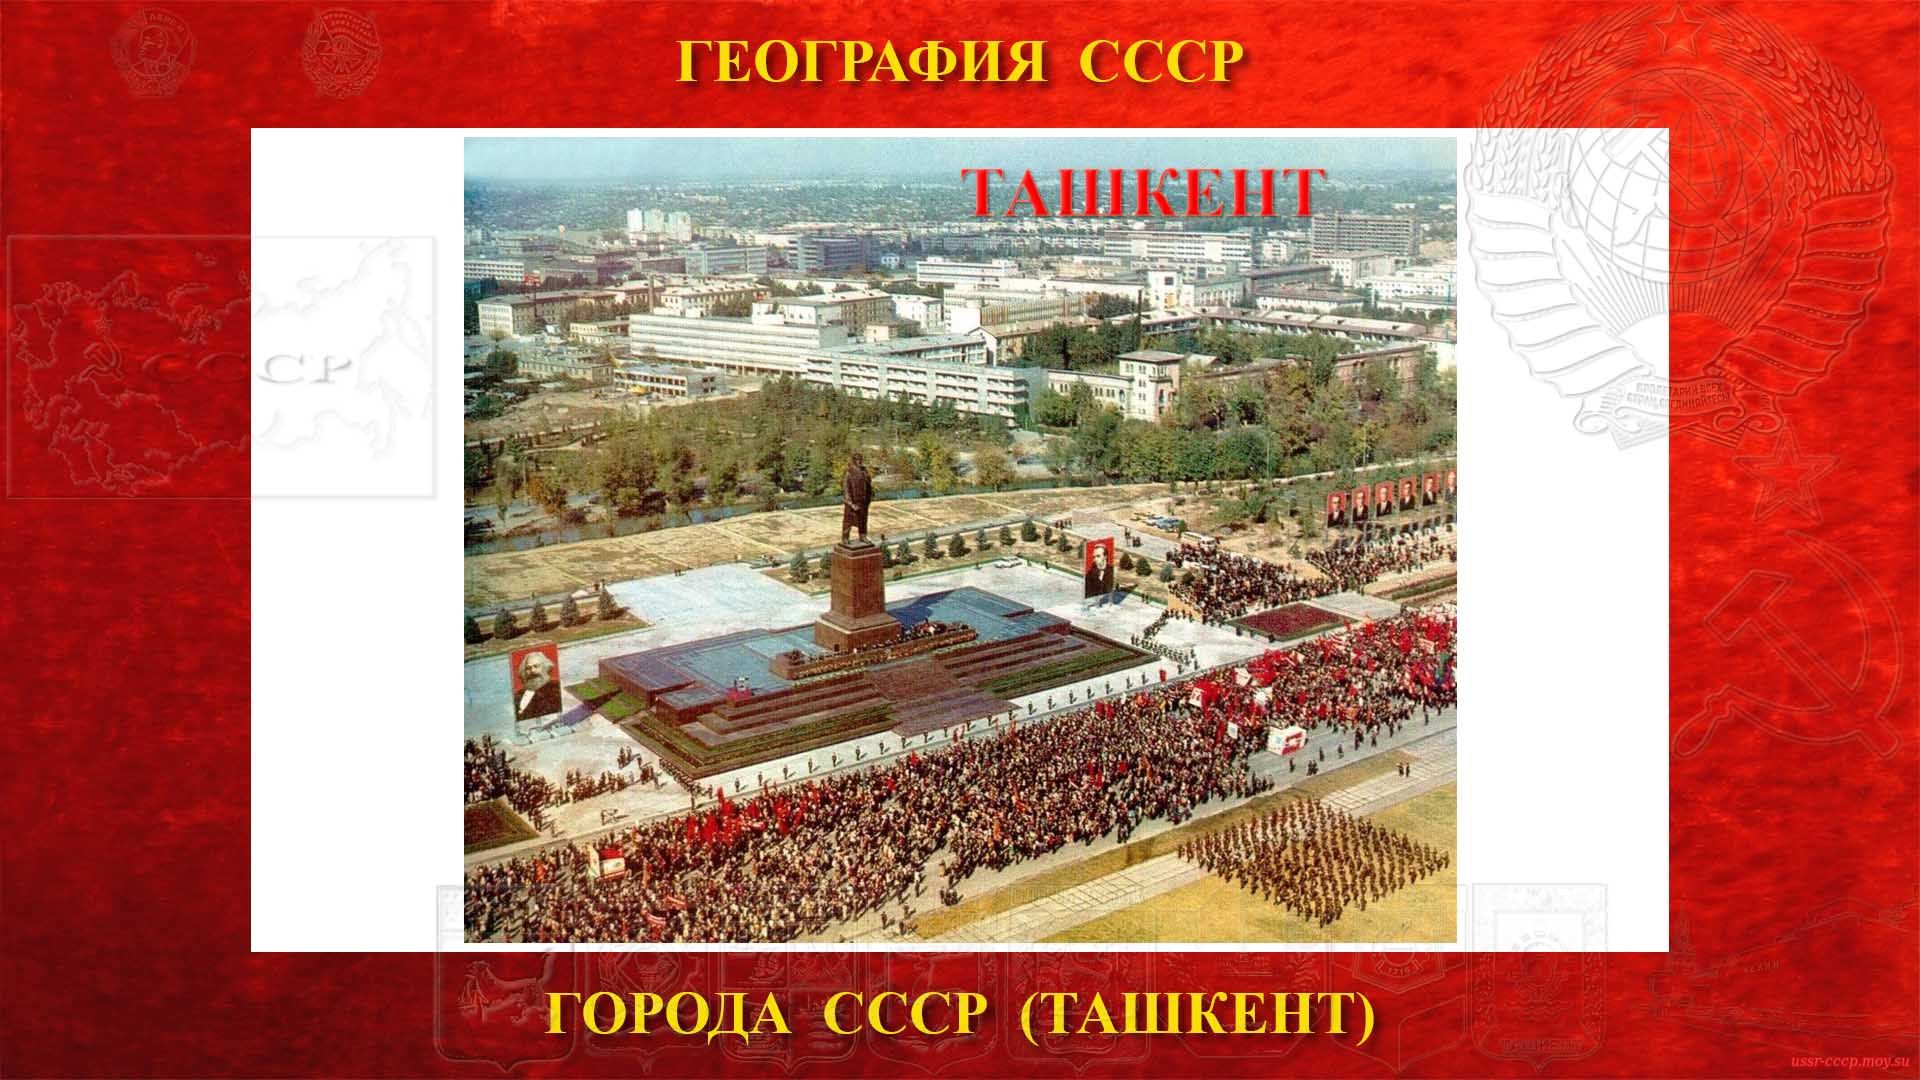 Ташкент — Город СССР (повествование)